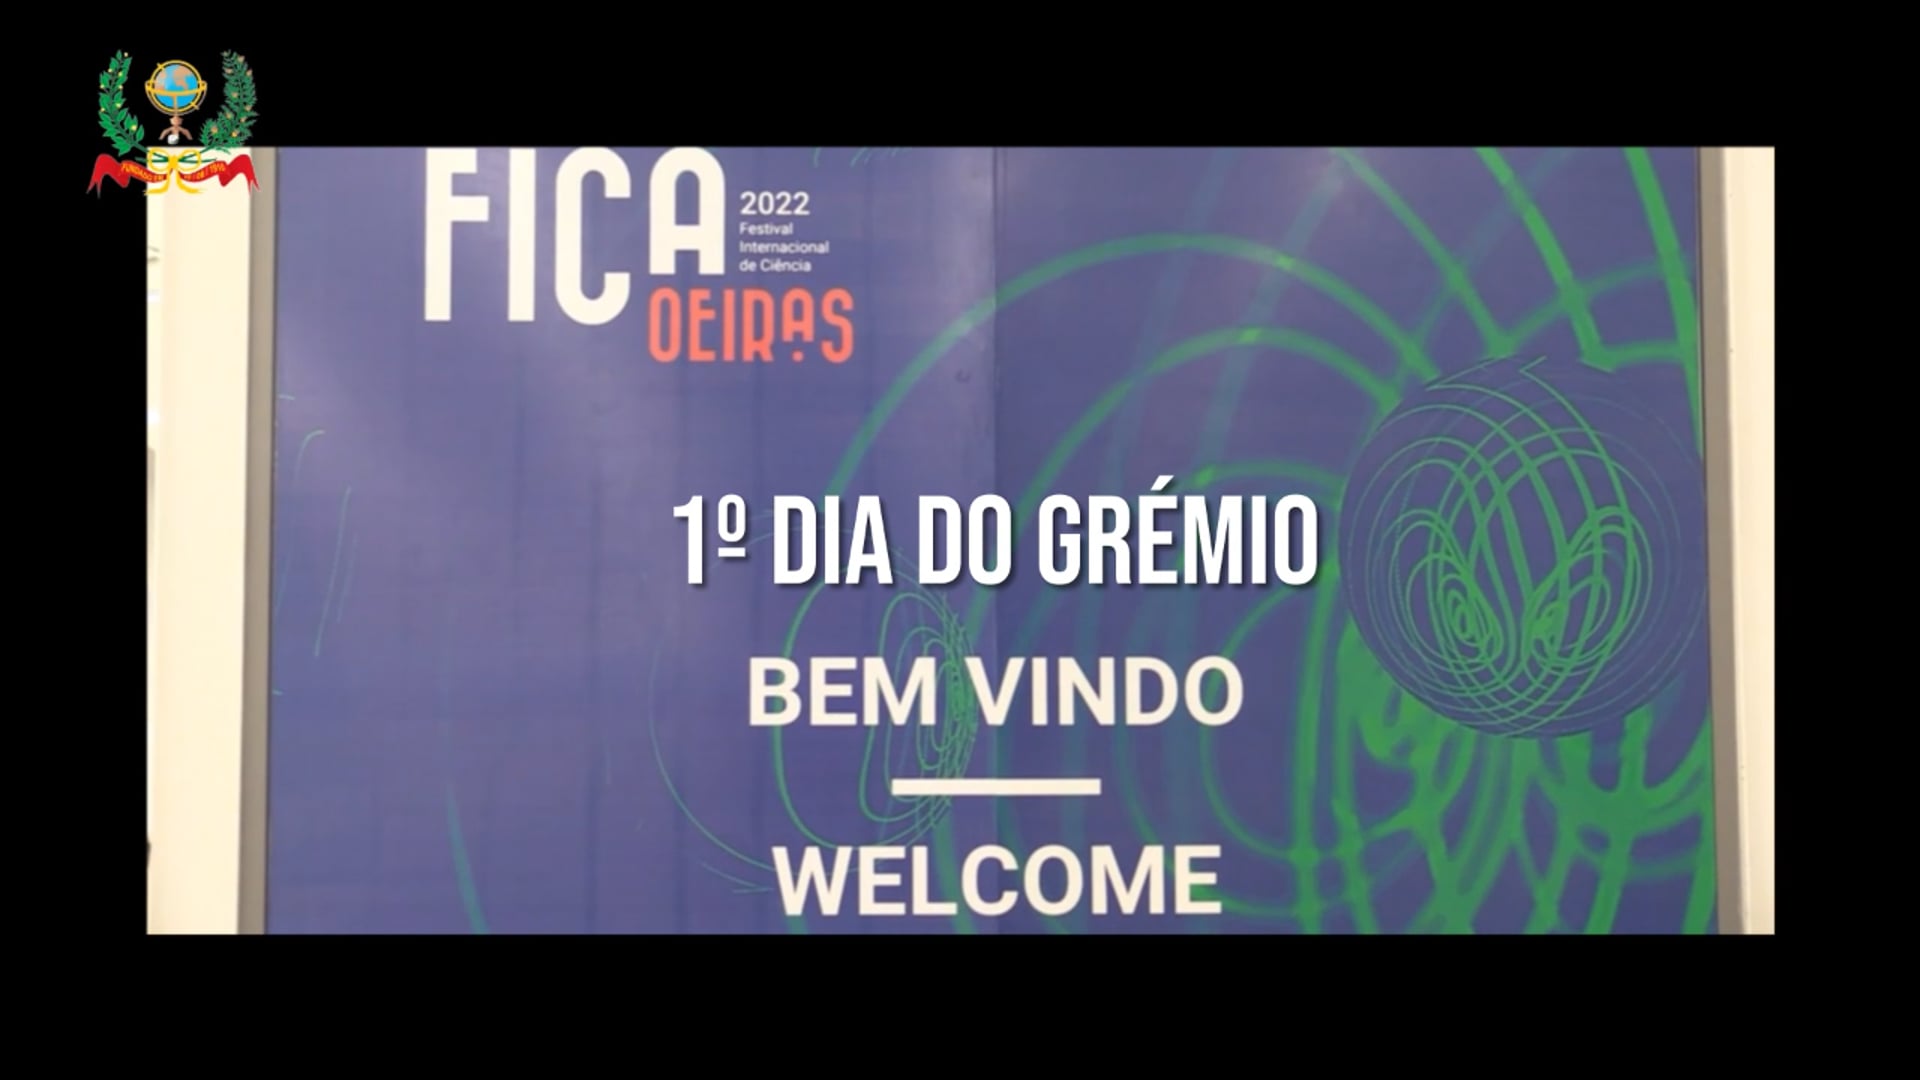 1º Dia do Grémio no Fic.a 2022 Festival da Ciência